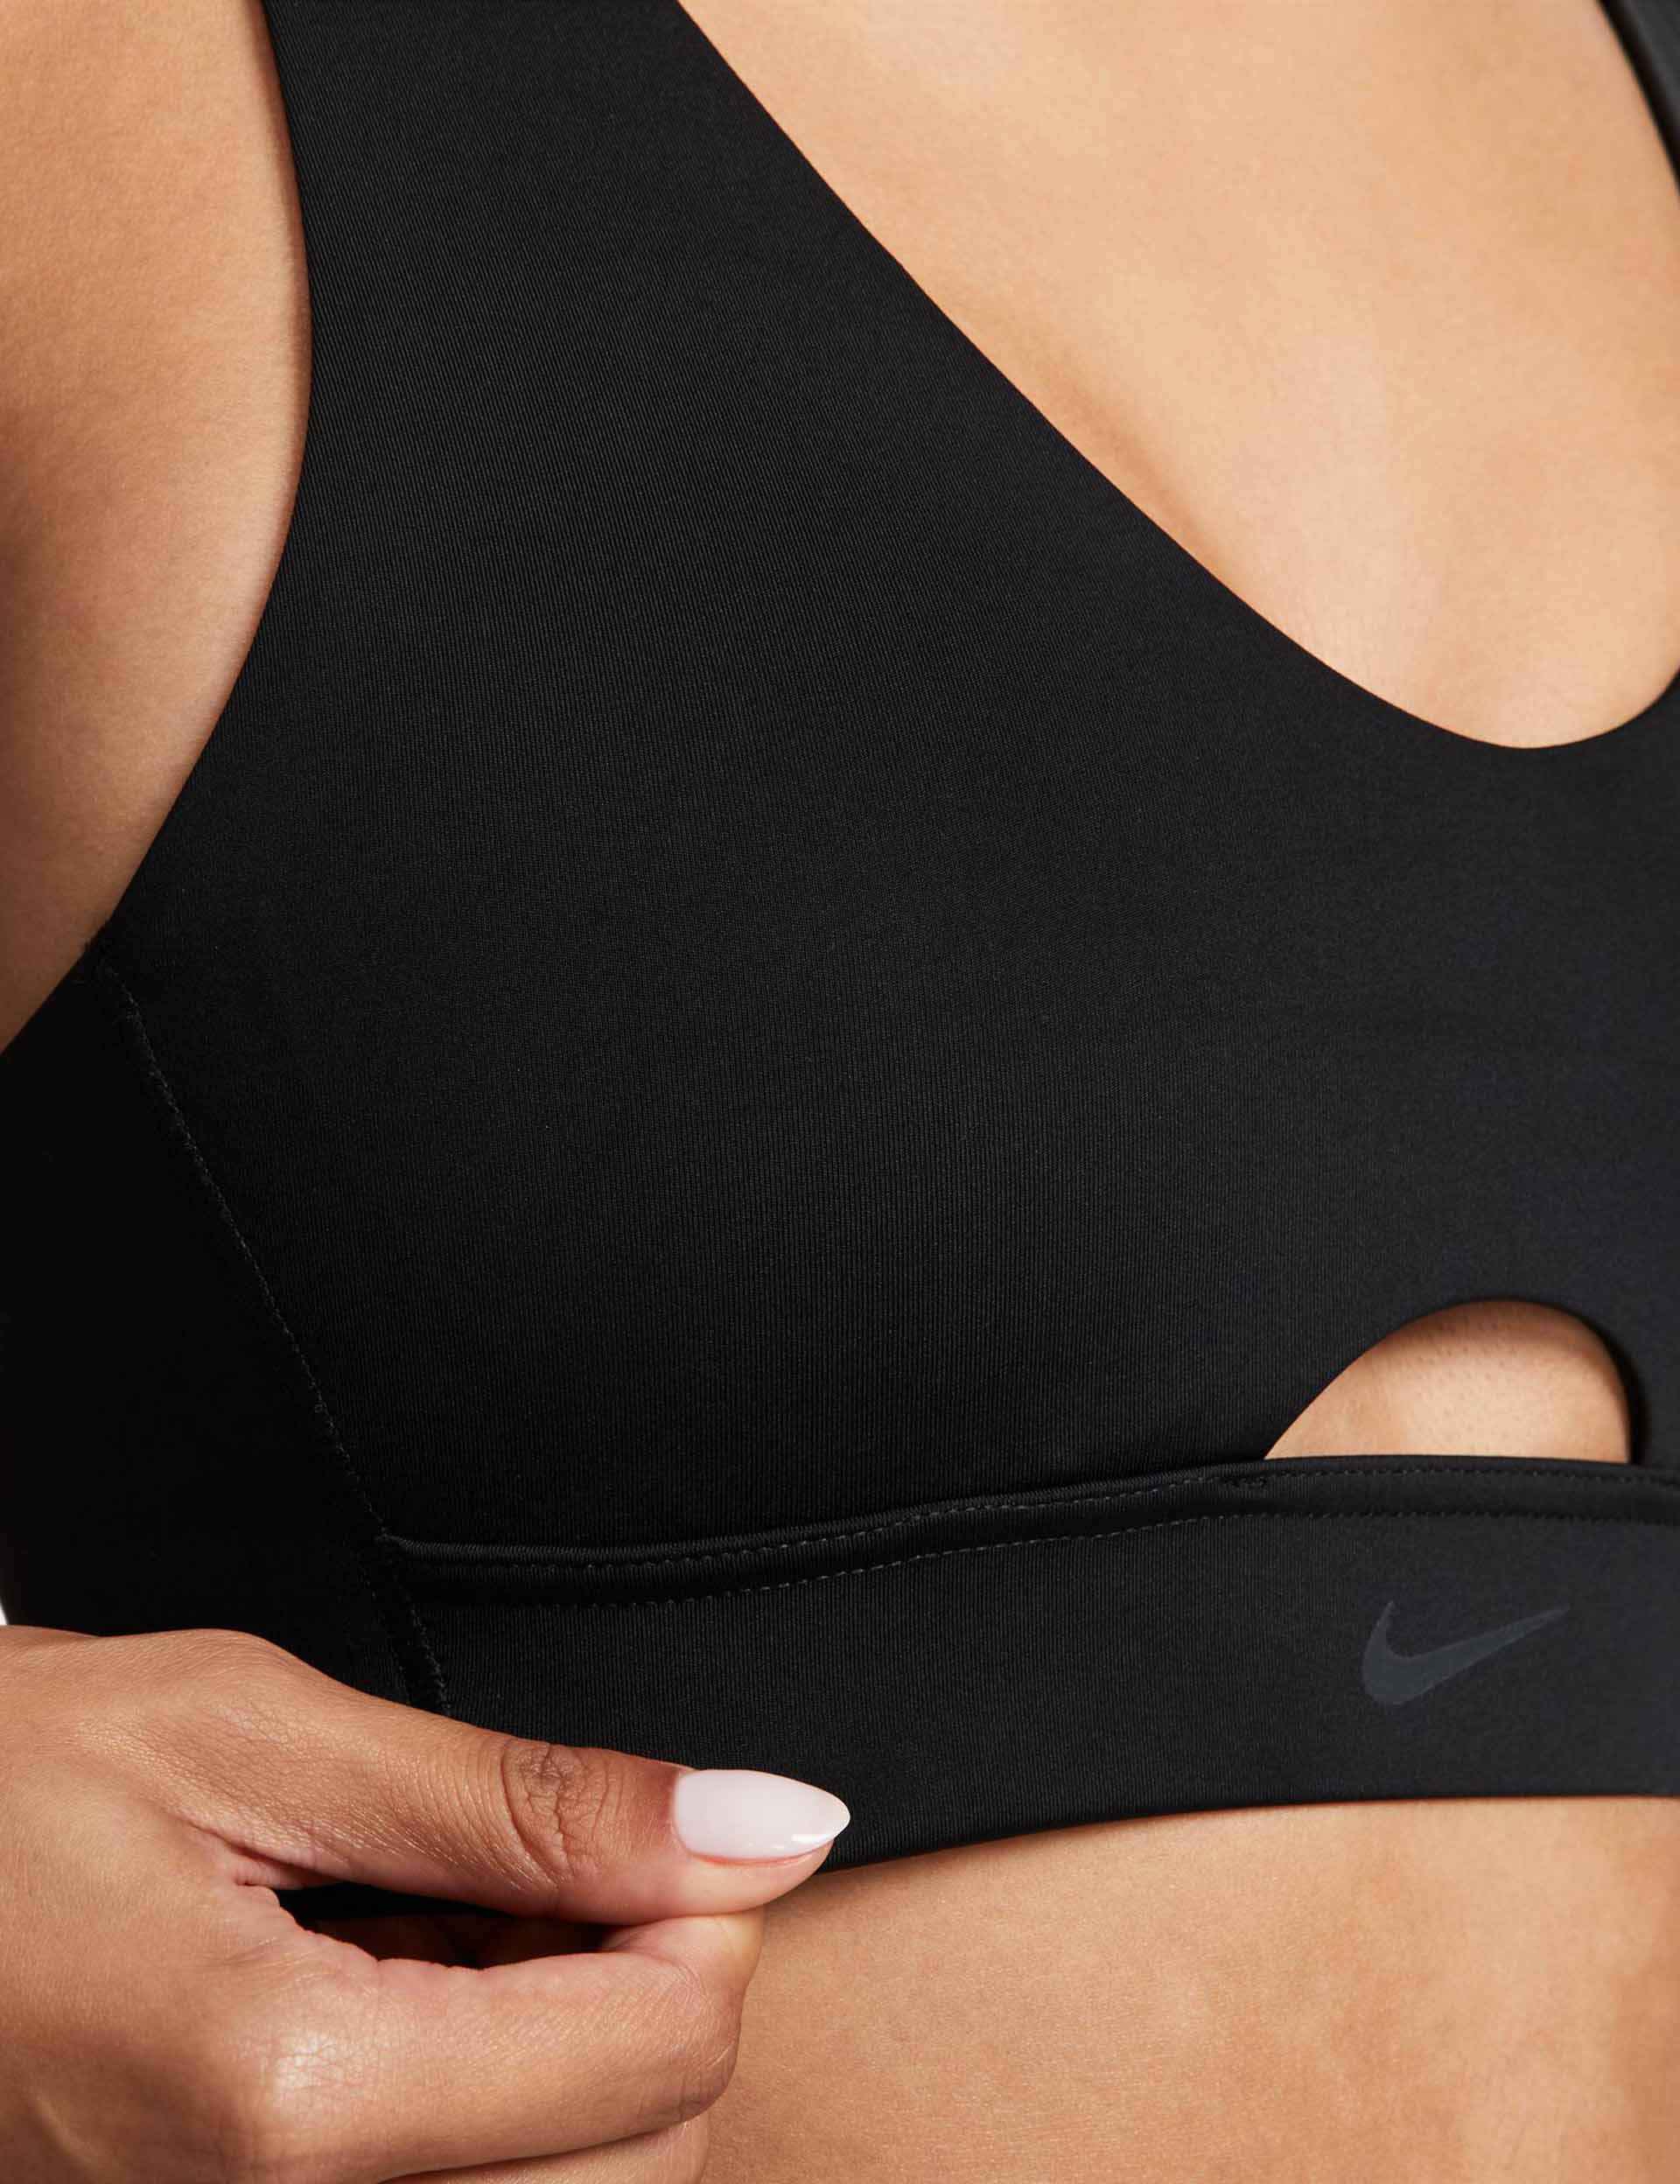 Nike, Intimates & Sleepwear, Buy Now Nike Indy Sports Bra Black Size Small  Ct37210 Strappy Back